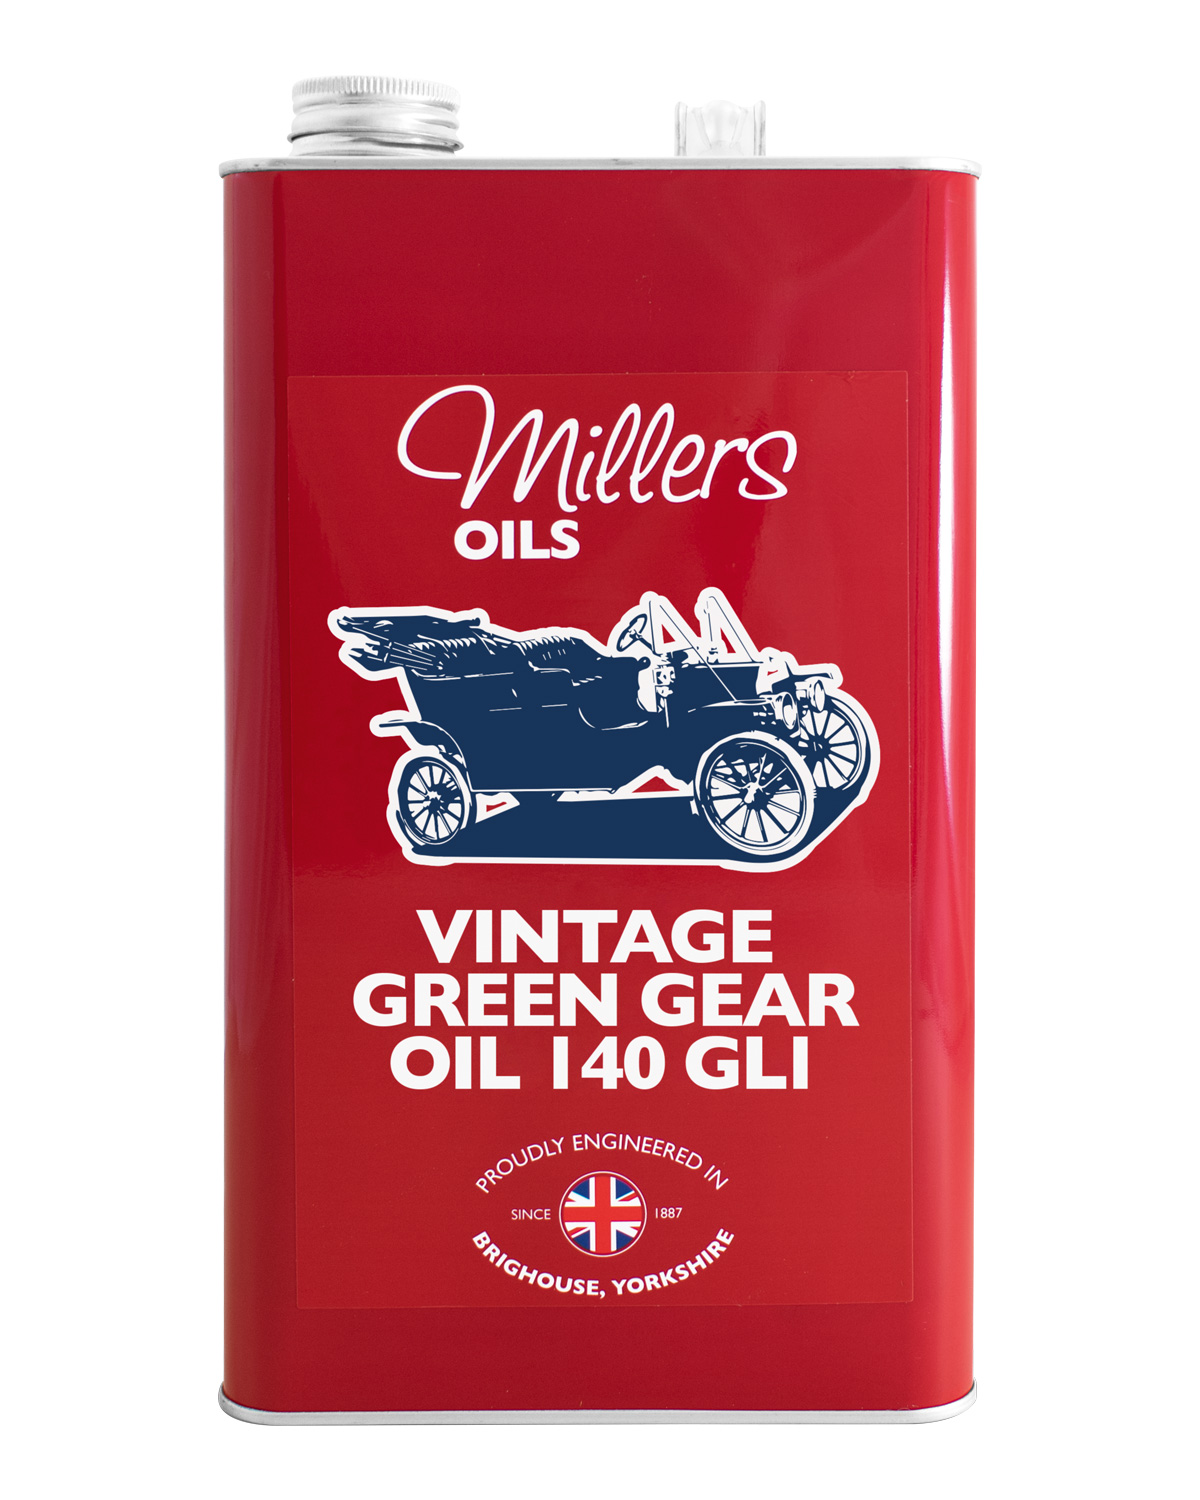 Millers Oils Vintage Green Gear Oil 140 GL1, 5 Liter